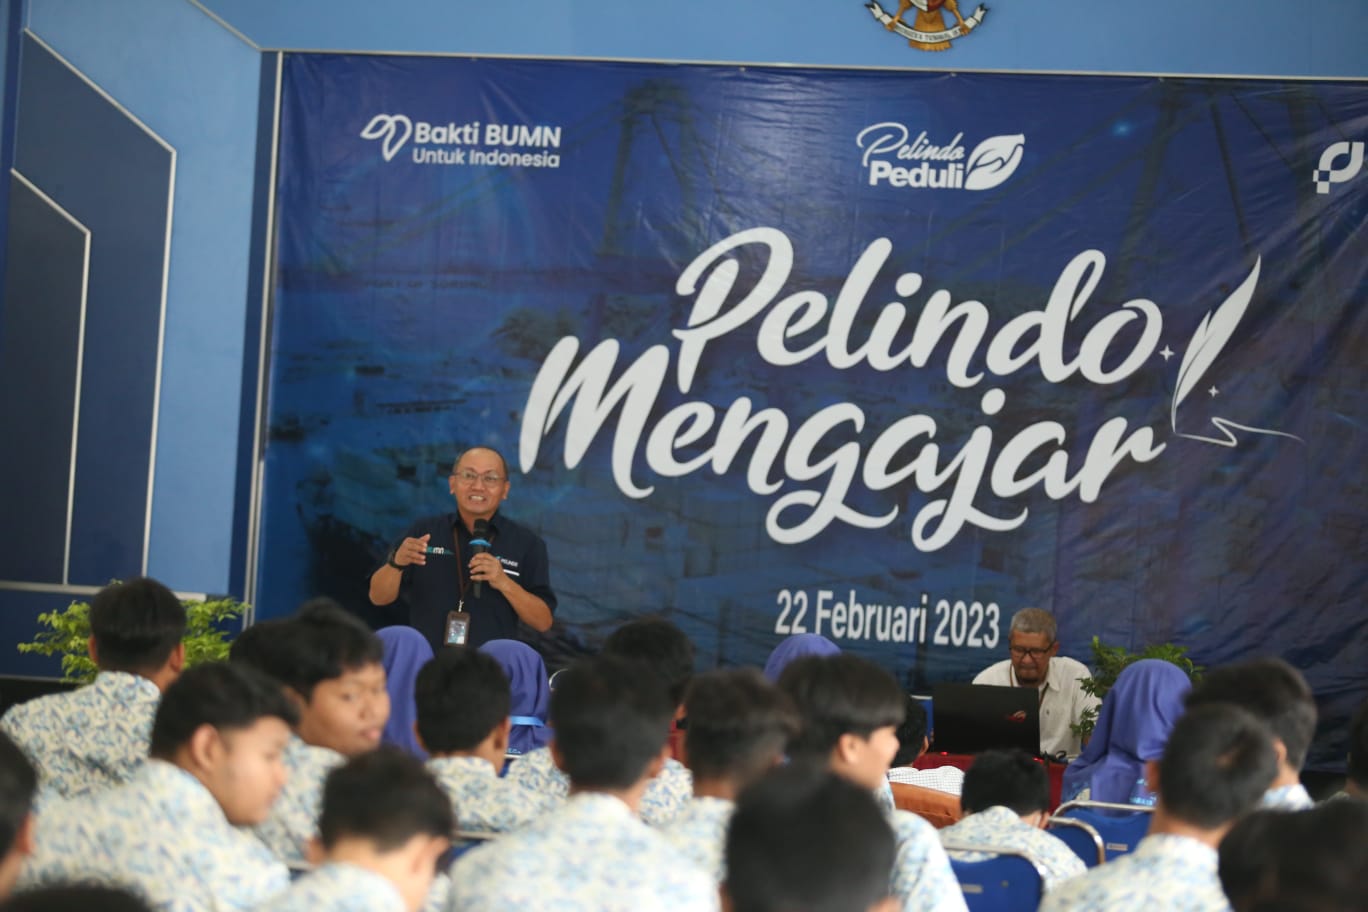 Pelindo Mengajar di SMKN 7 Surabaya, Direktur Ikut Terjun